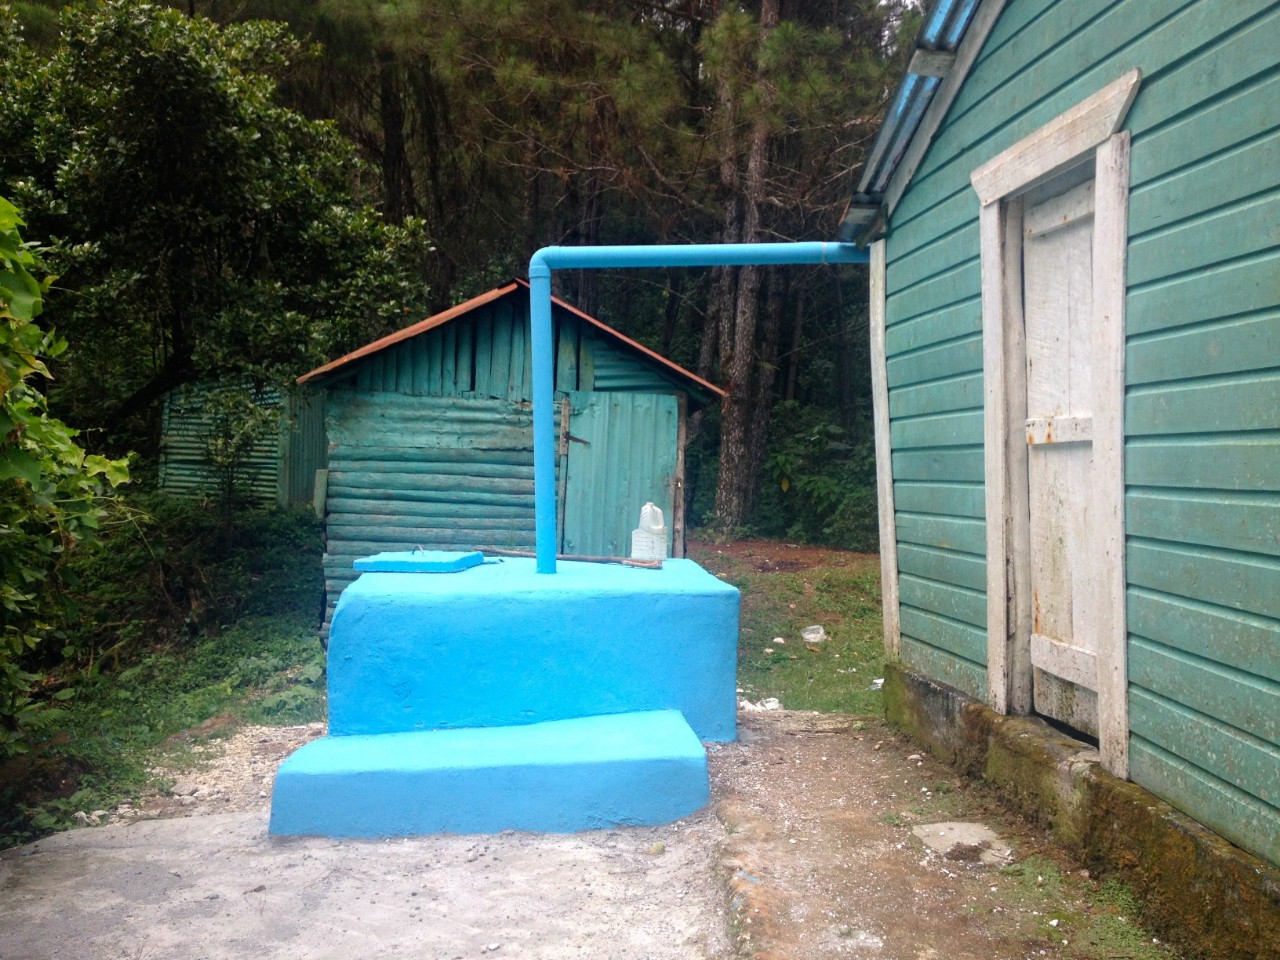 Lack of rainwater harvesting